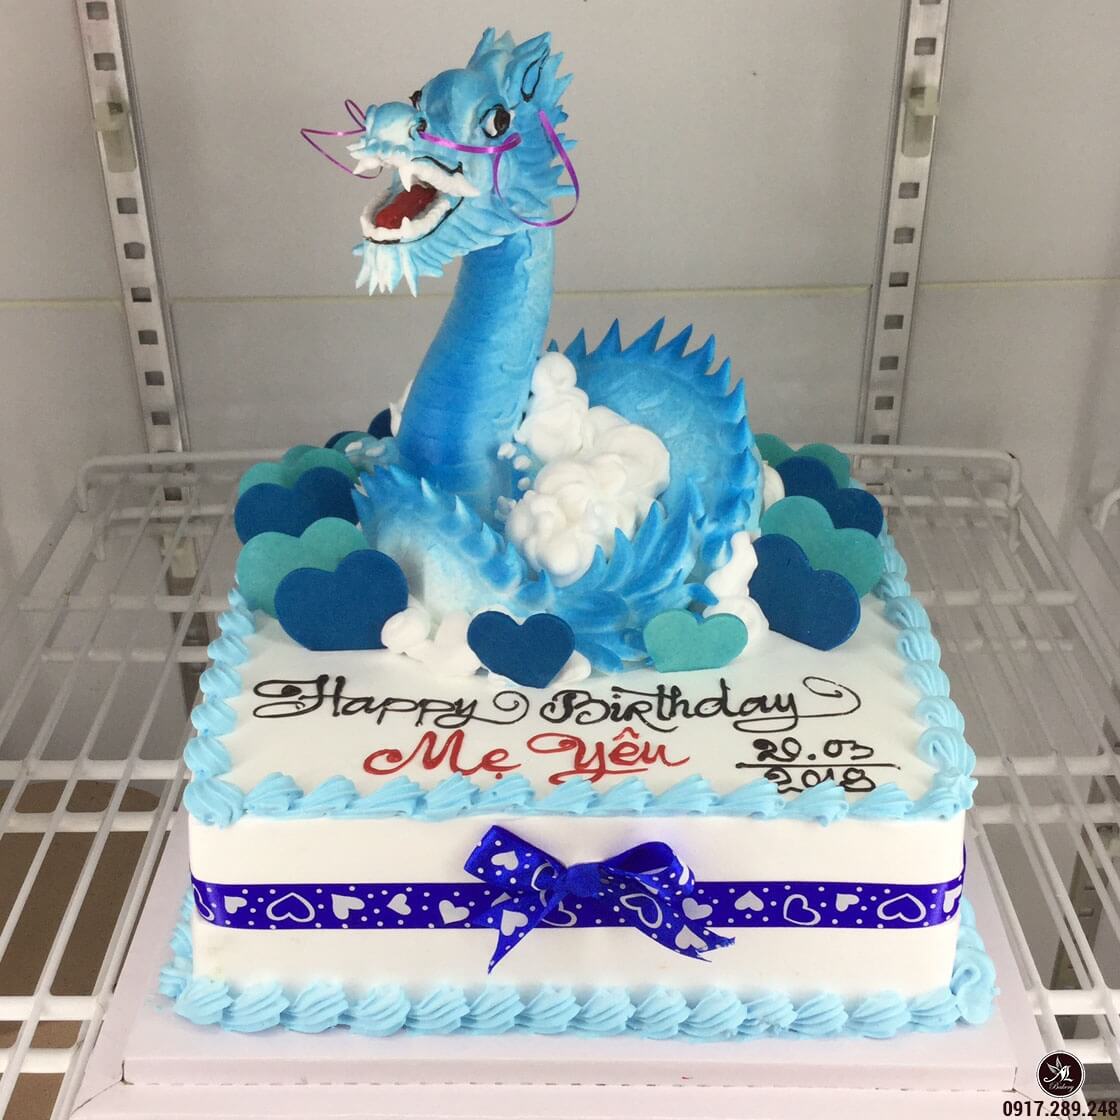 Bánh kem hình con rồng màu xanh mừng sinh nhật mẹ yêu | Bánh kem ...